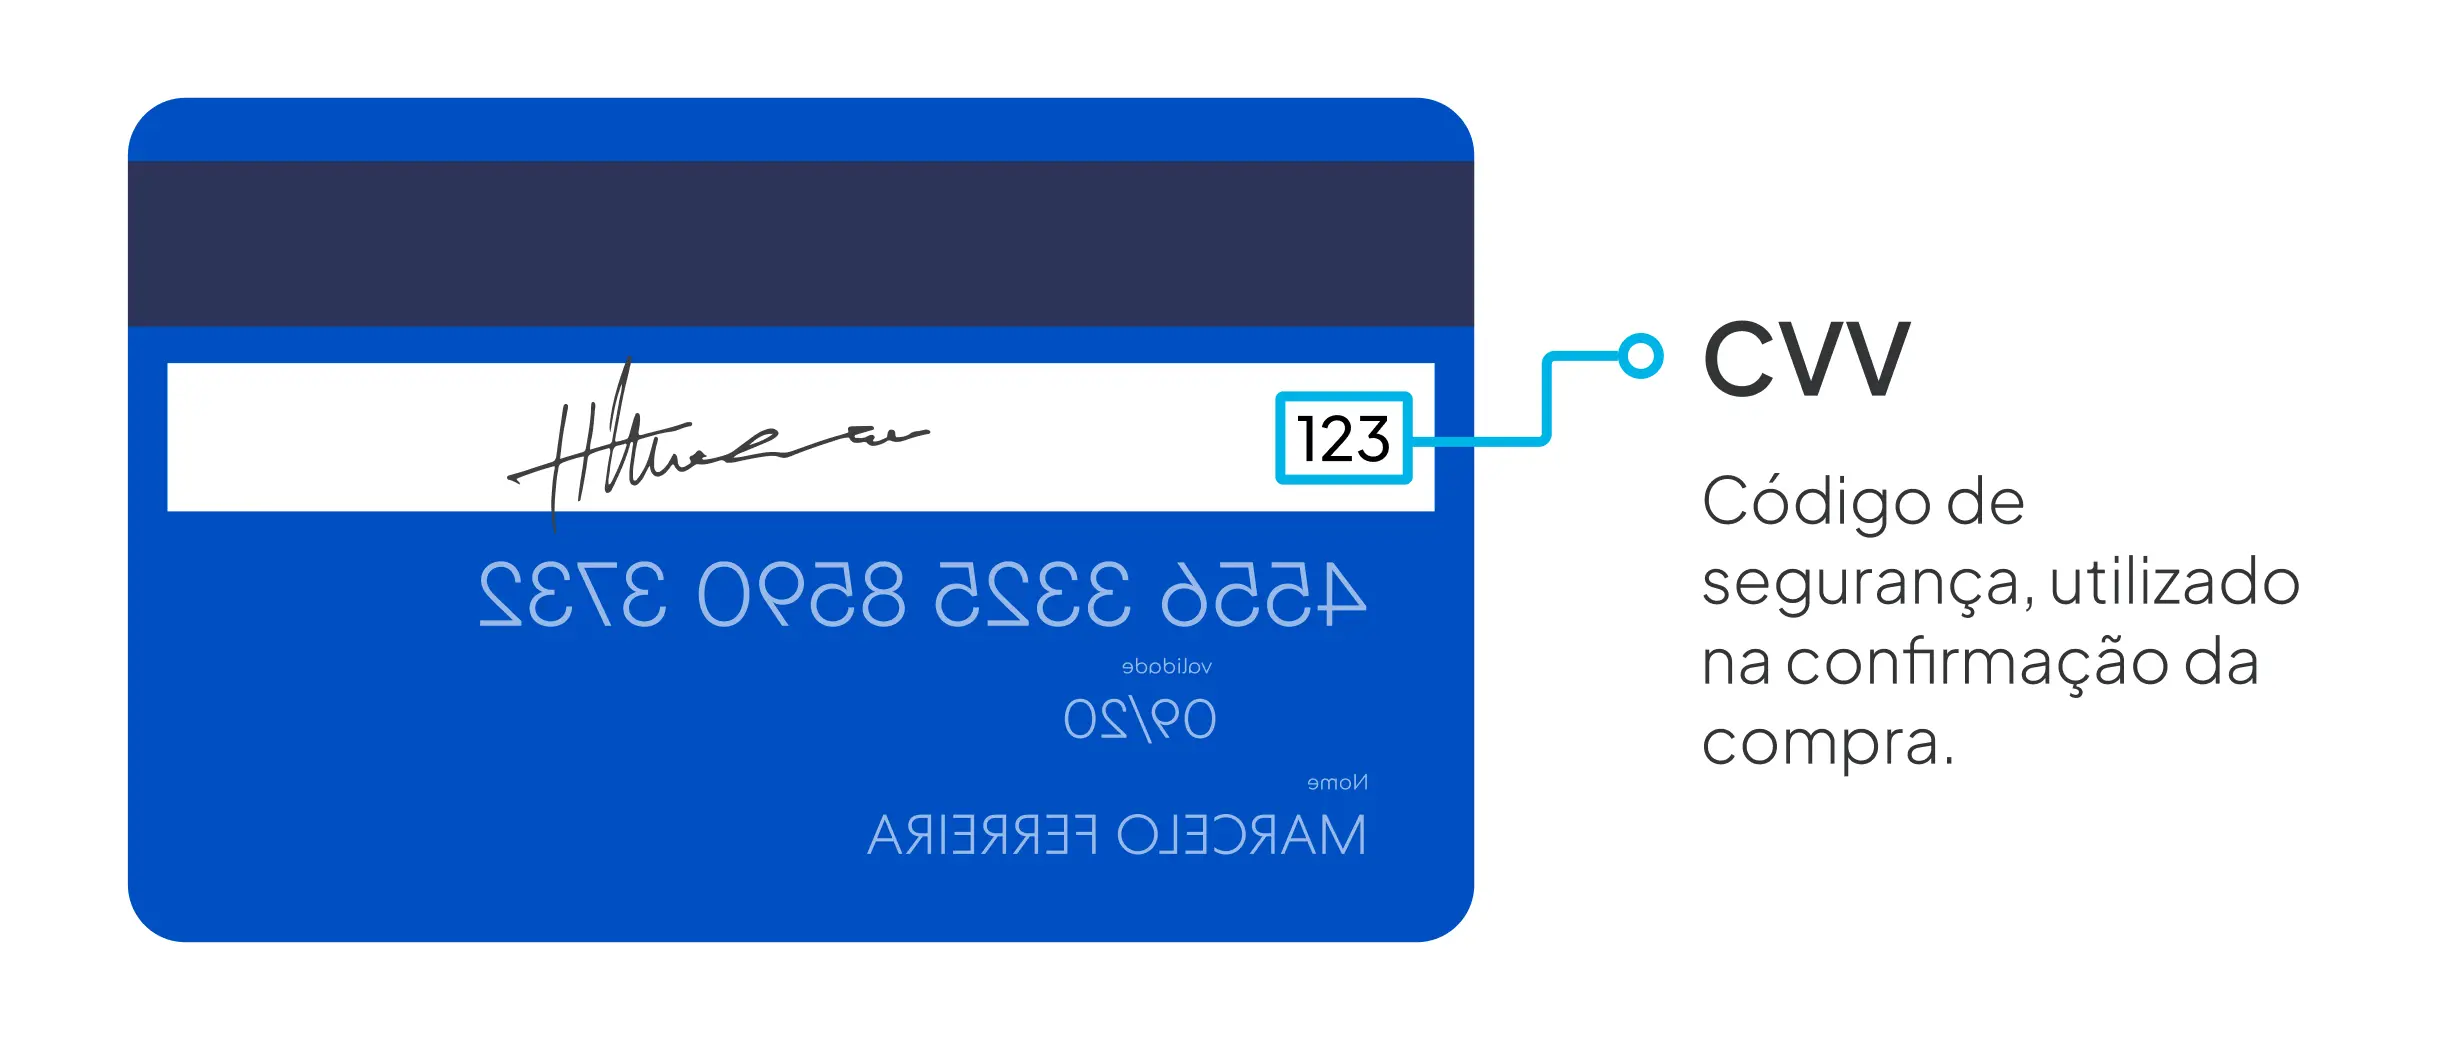 O Que Significa Cvv E Onde Fica No Cartão De Crédito 4547